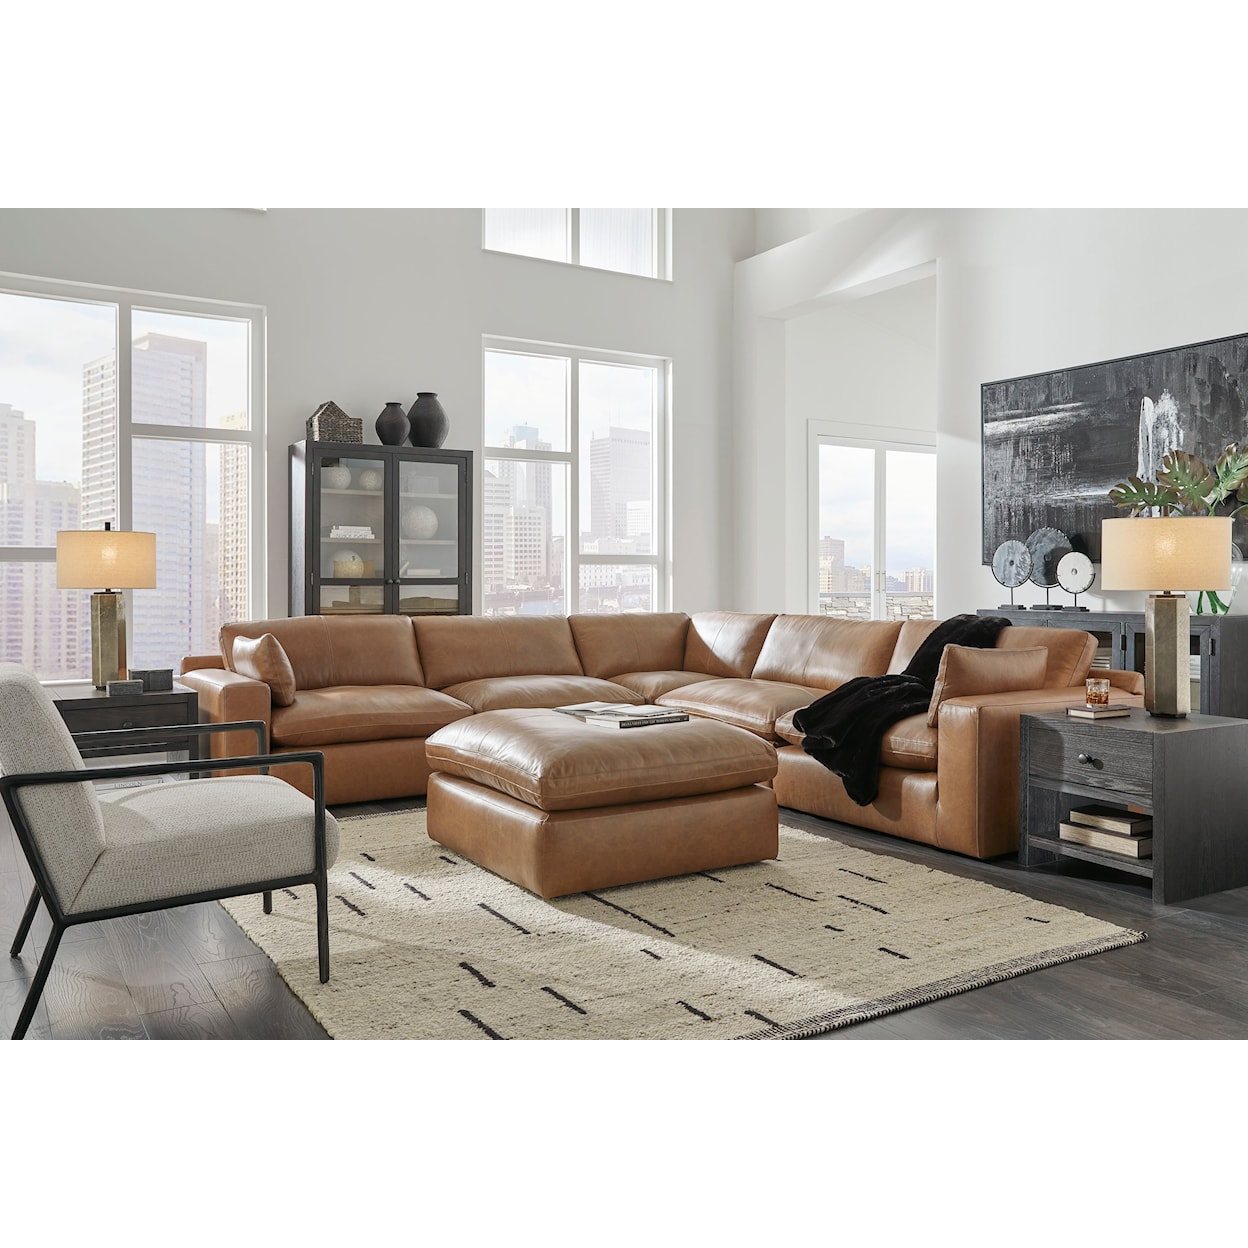 StyleLine Emilia Living Room Set